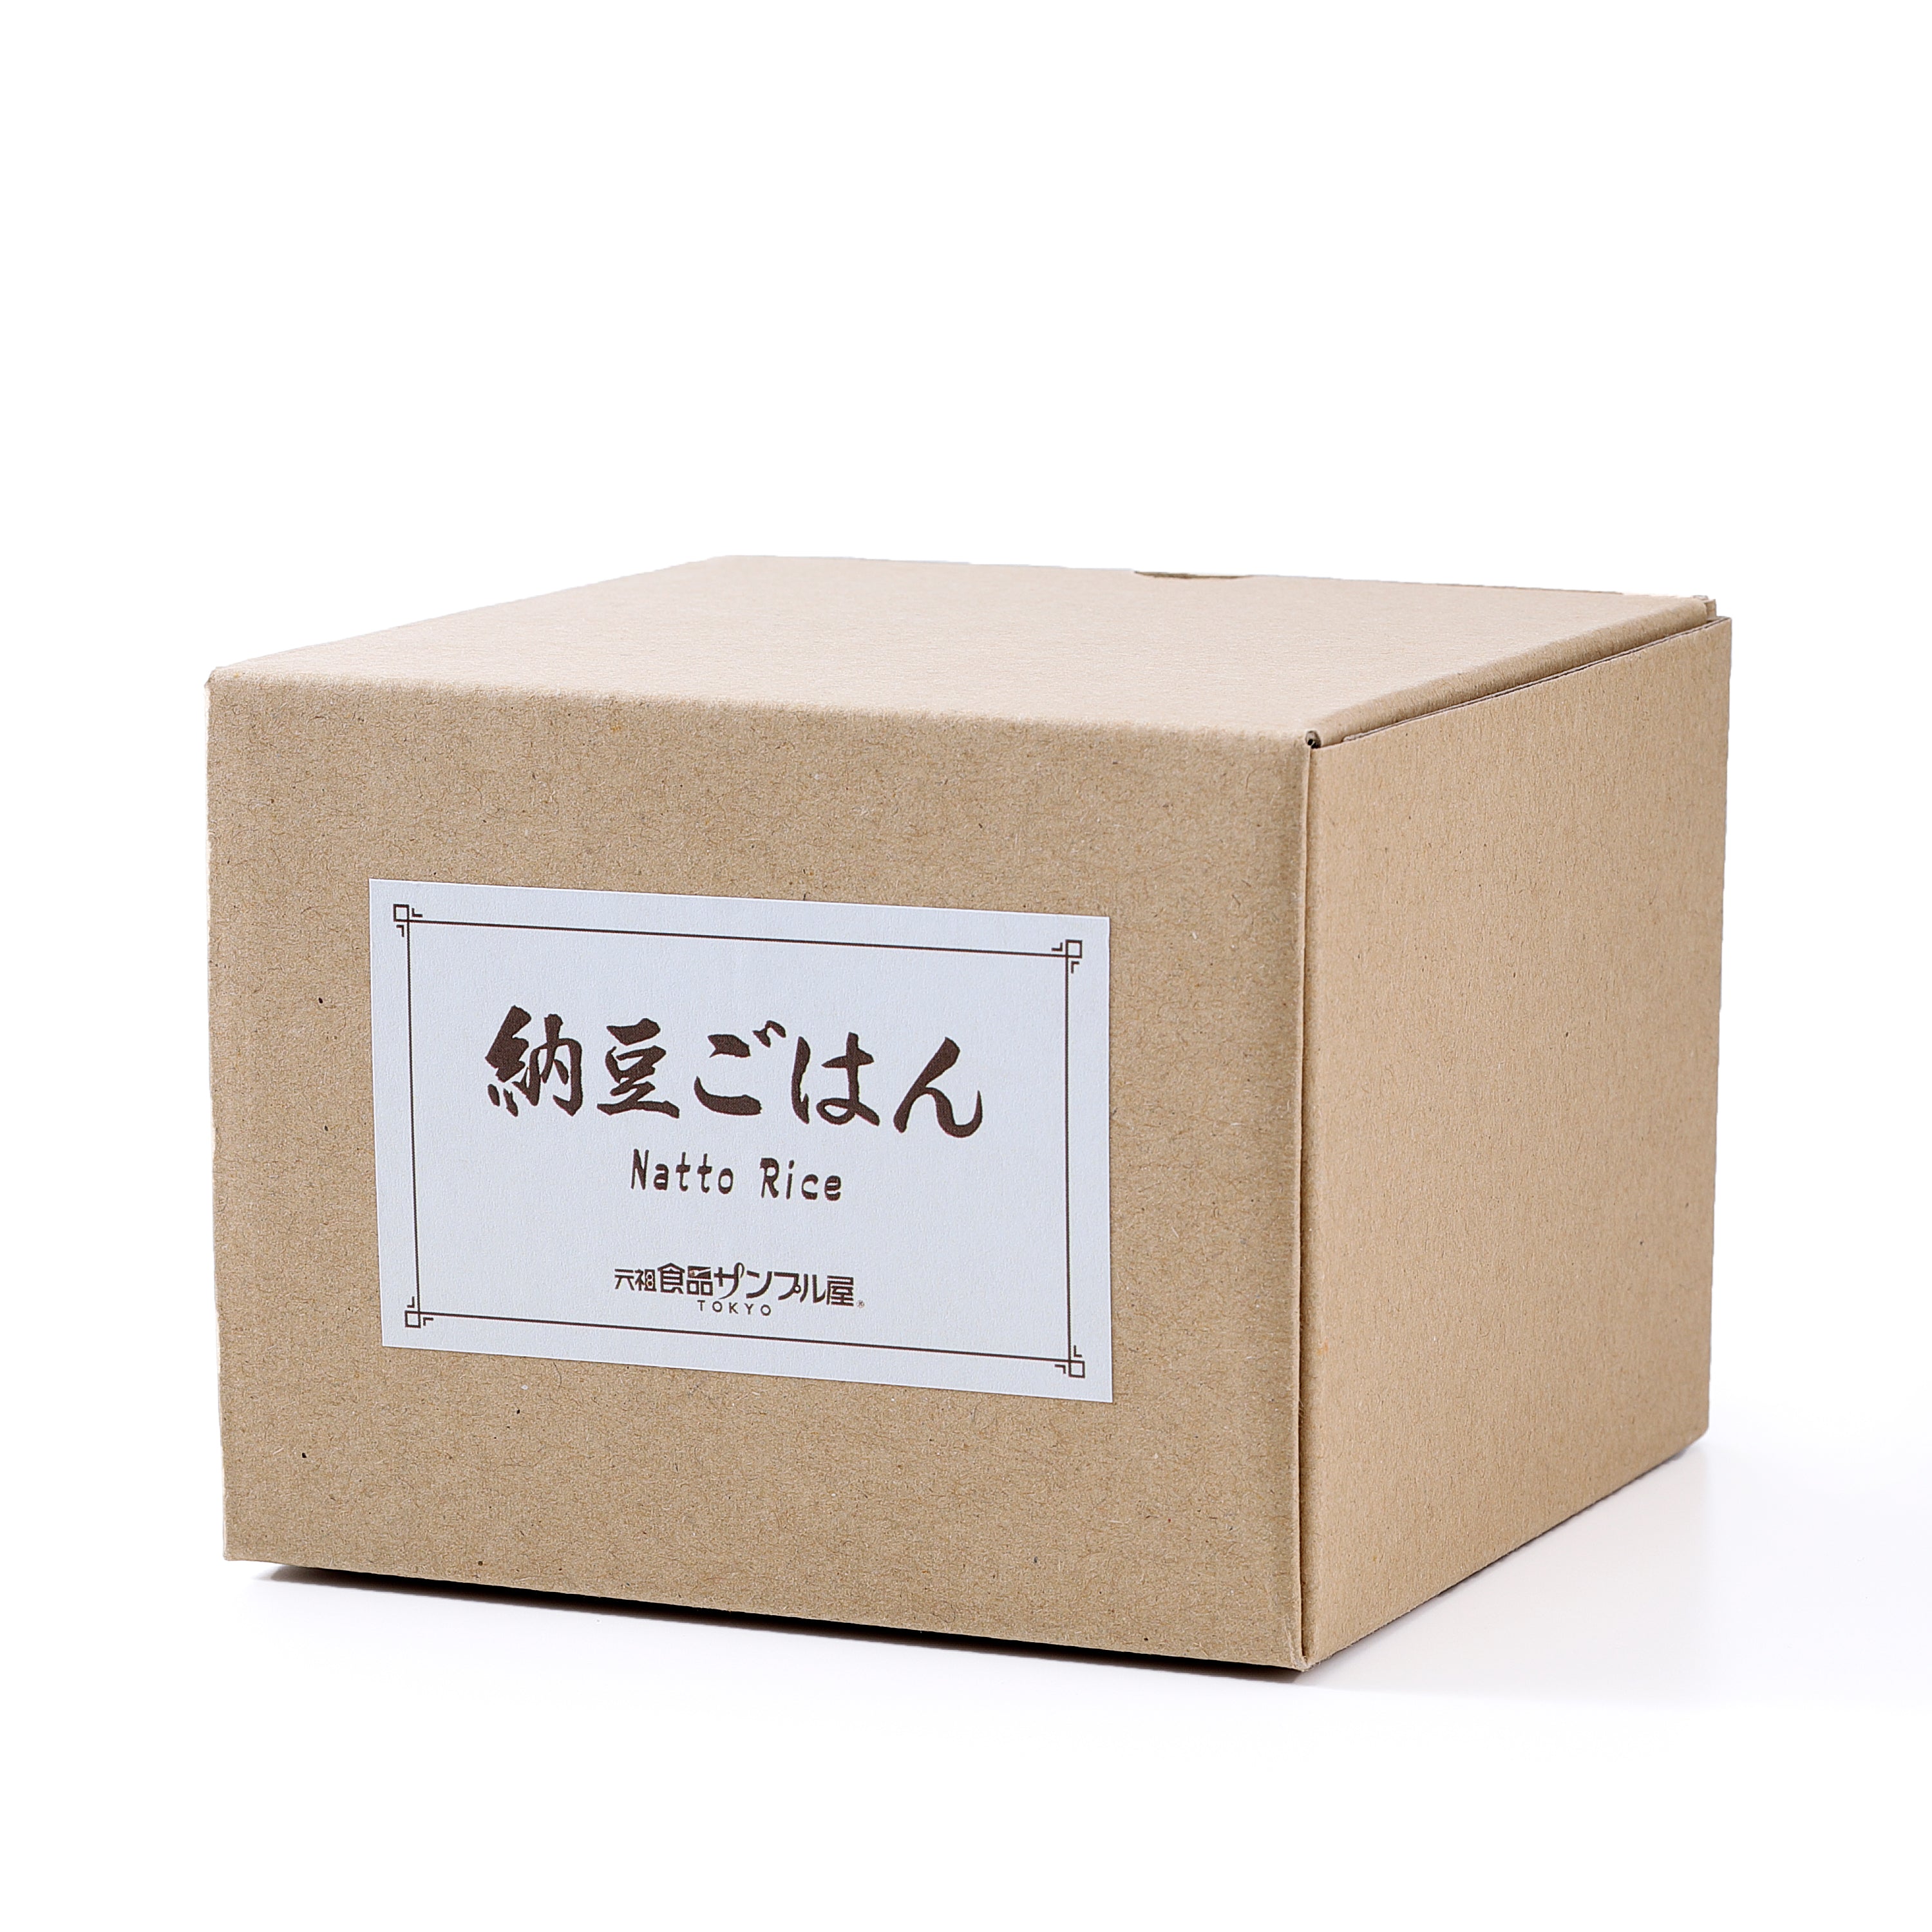 これは元祖食品サンプル屋「納豆ごはん」商品パッケージ画像です。